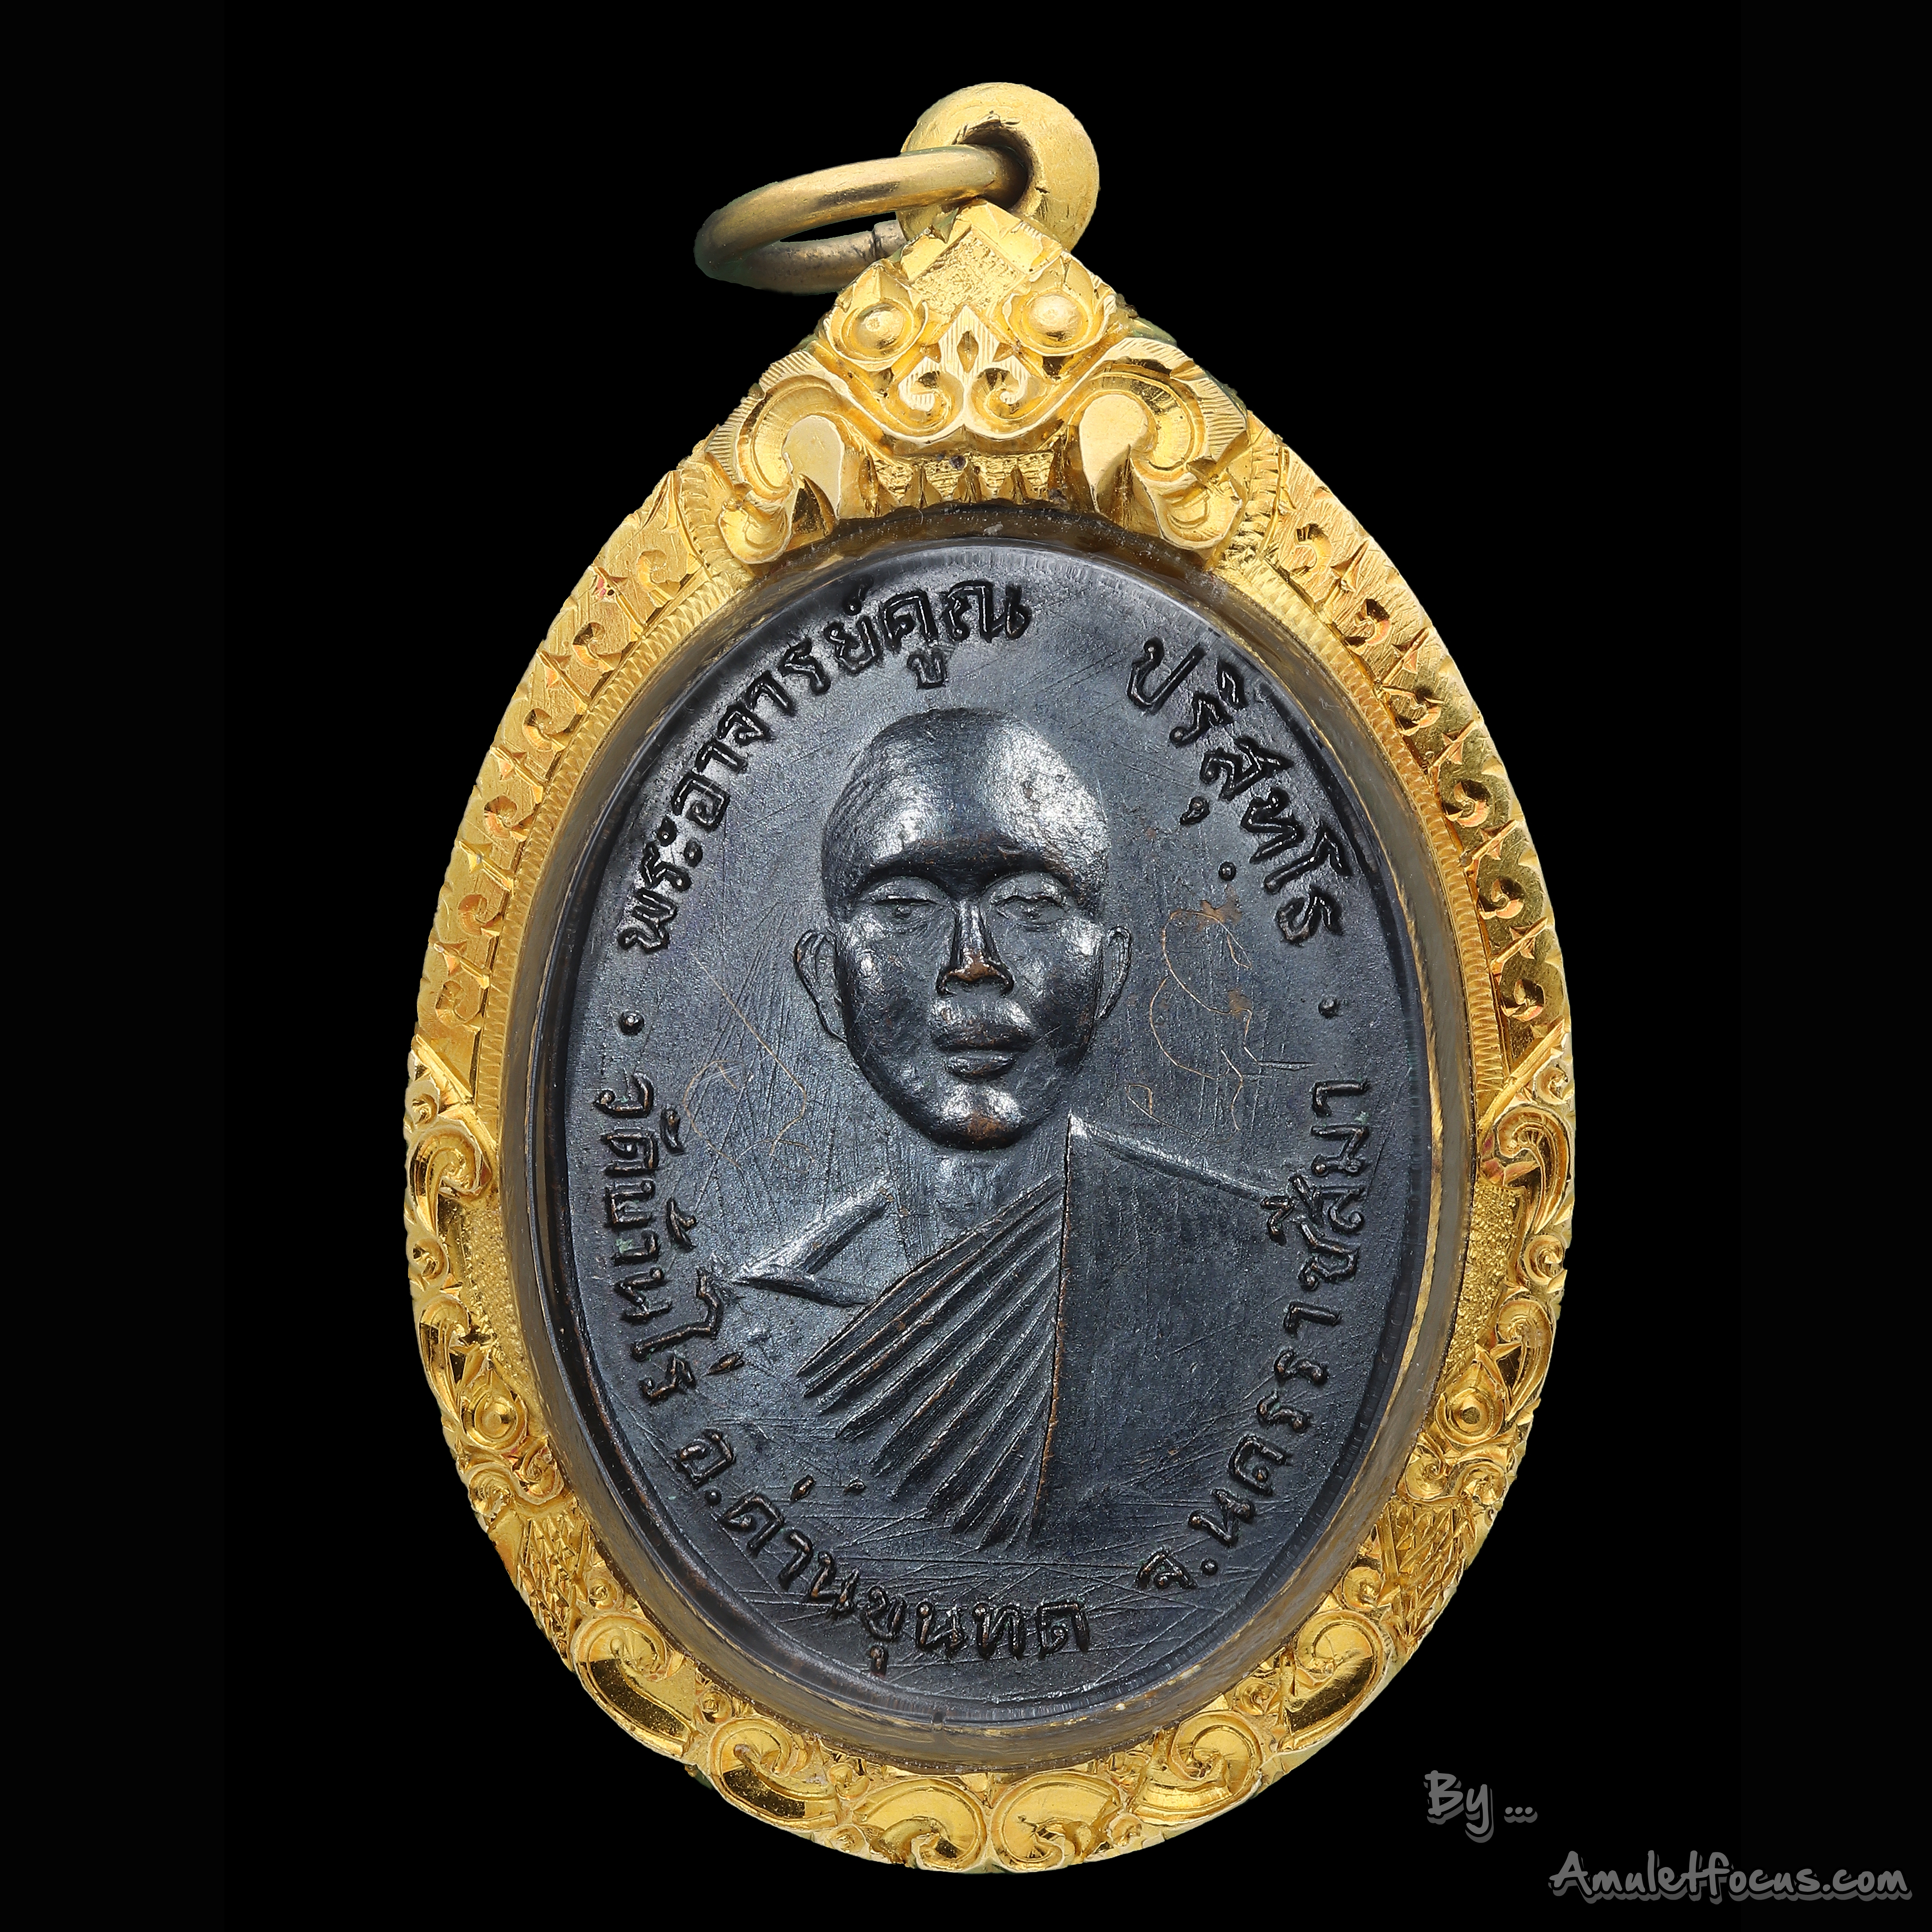 เหรียญรุ่นแรก หลวงพ่อคูณ แจกในงานฉลองพระประธานวัดแจ้งนอก 9 สิงหาคม 2512 เนื้อทองแดง พร้อมจาร